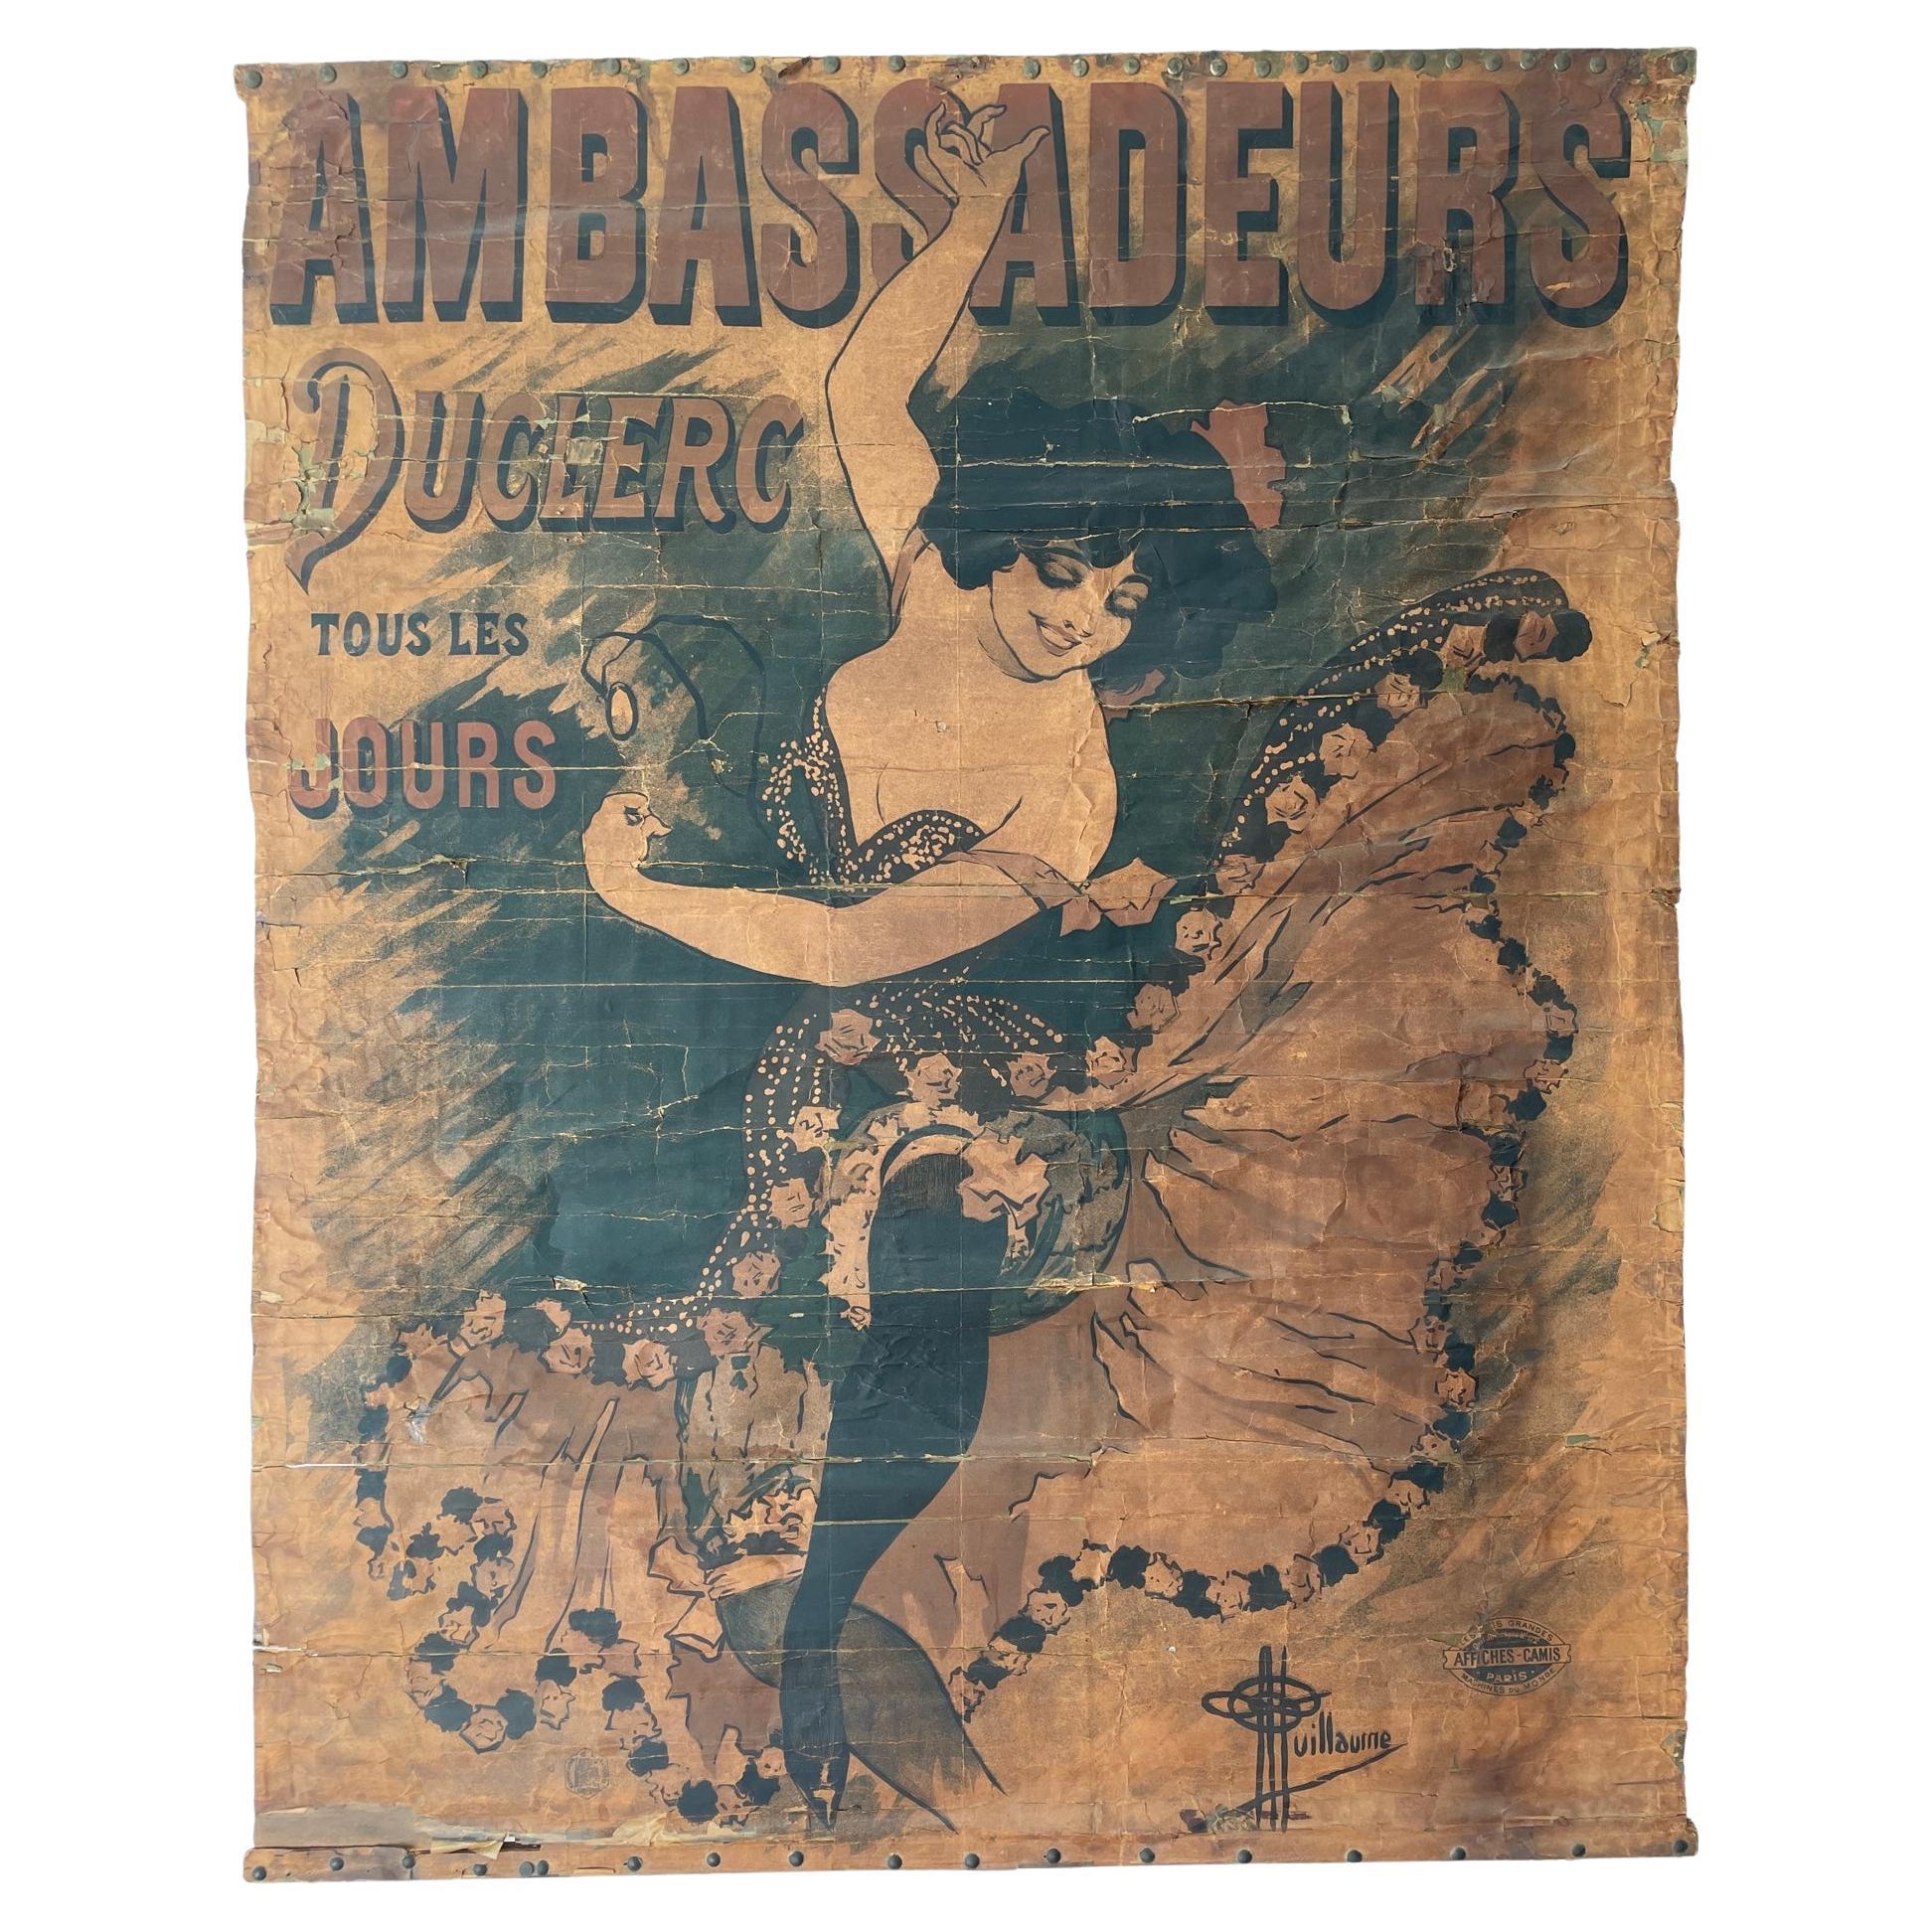 1894 Antique affiche / poster Ambassadeurs Duclerc tous les jours - Guillaume en vente